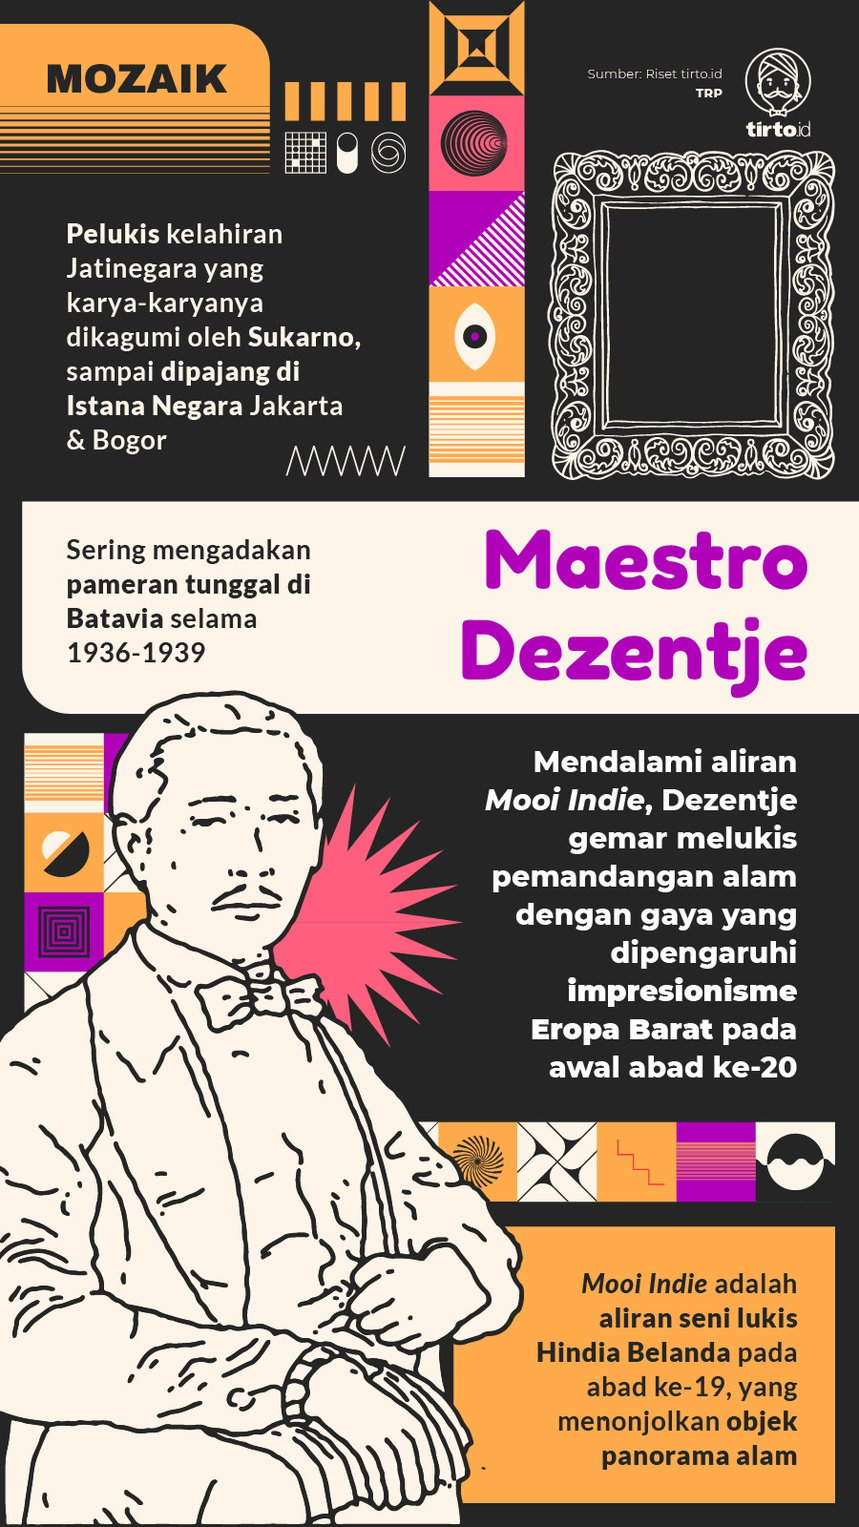 Infografik Mozaik Maestro Dezentje